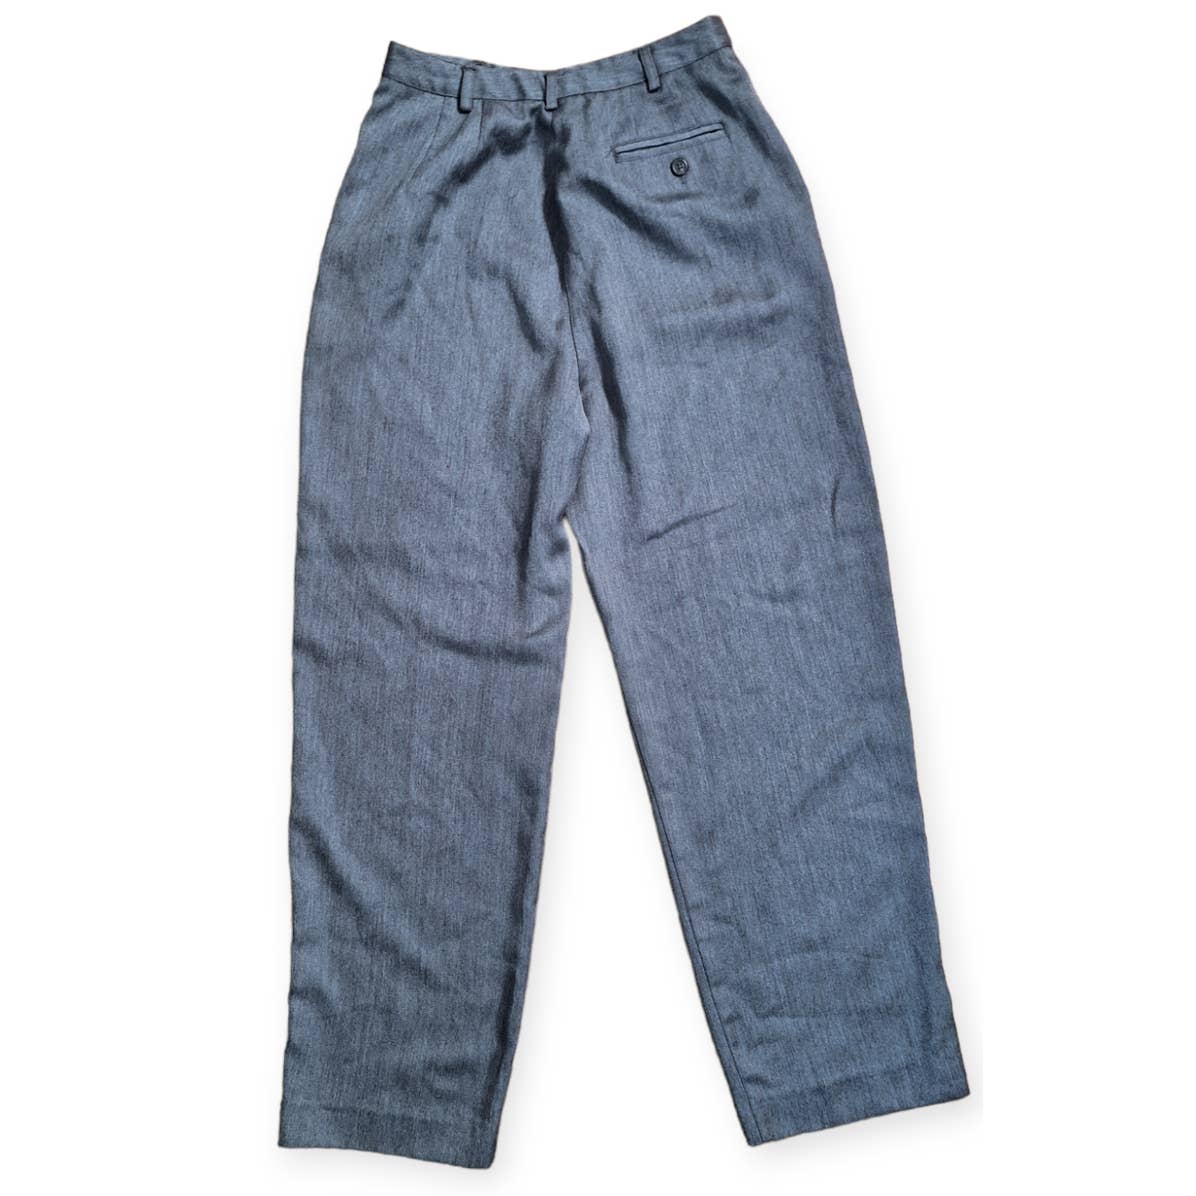 80s/90s Gray High Waist Pants Size 6 Peitie Waist 27" - themallvintage The Mall Vintage